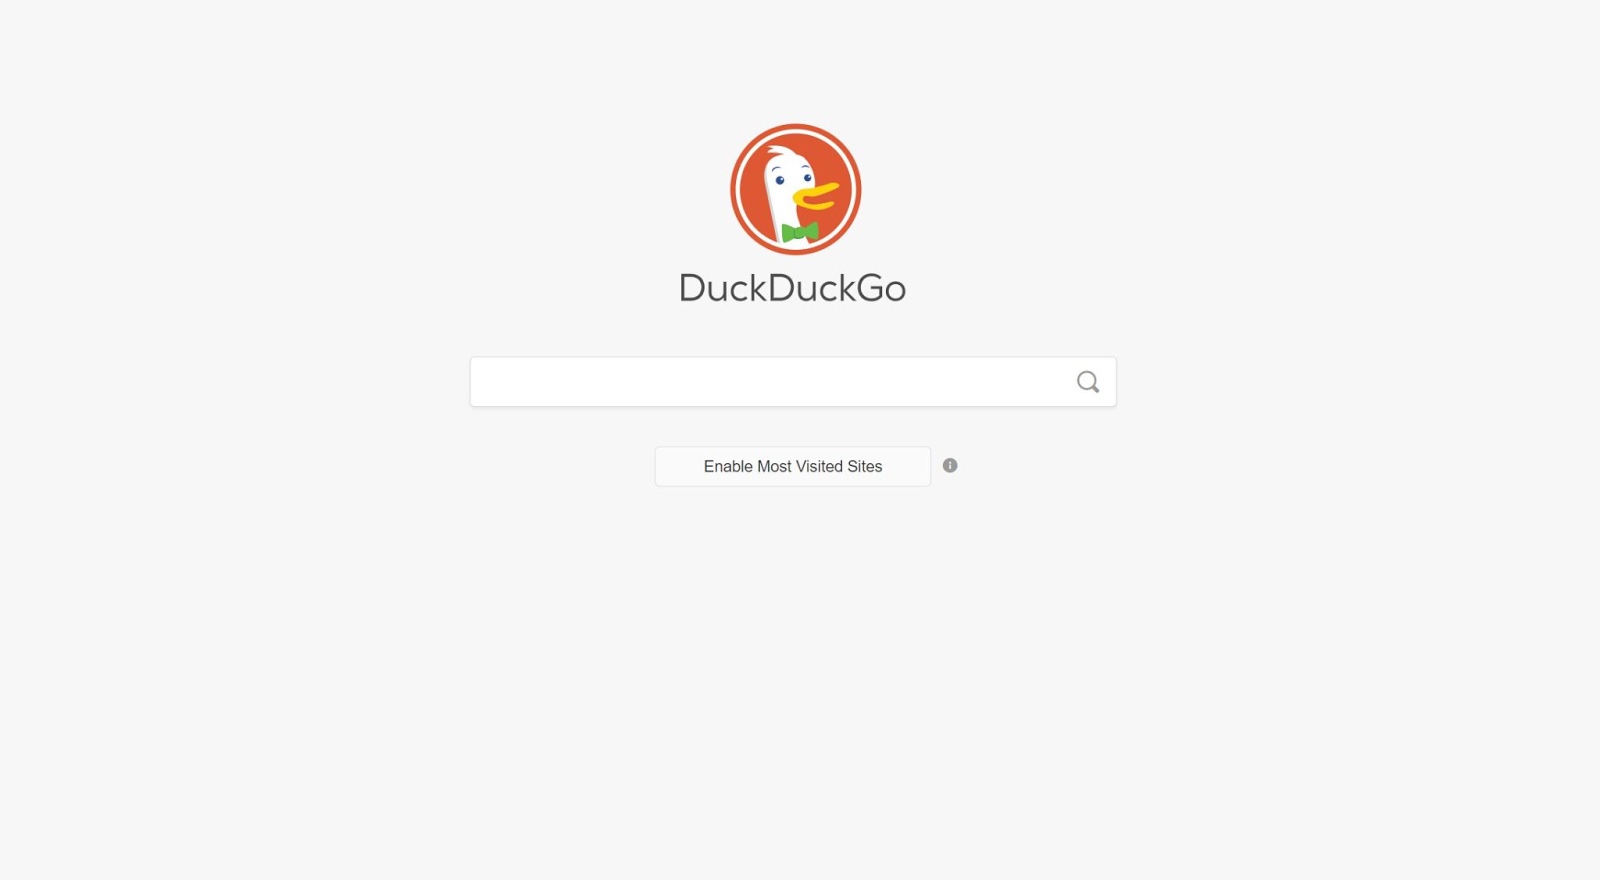 Personalize sua experiência DuckDuckGo e habilite-a a mostrar seus locais mais visitados.